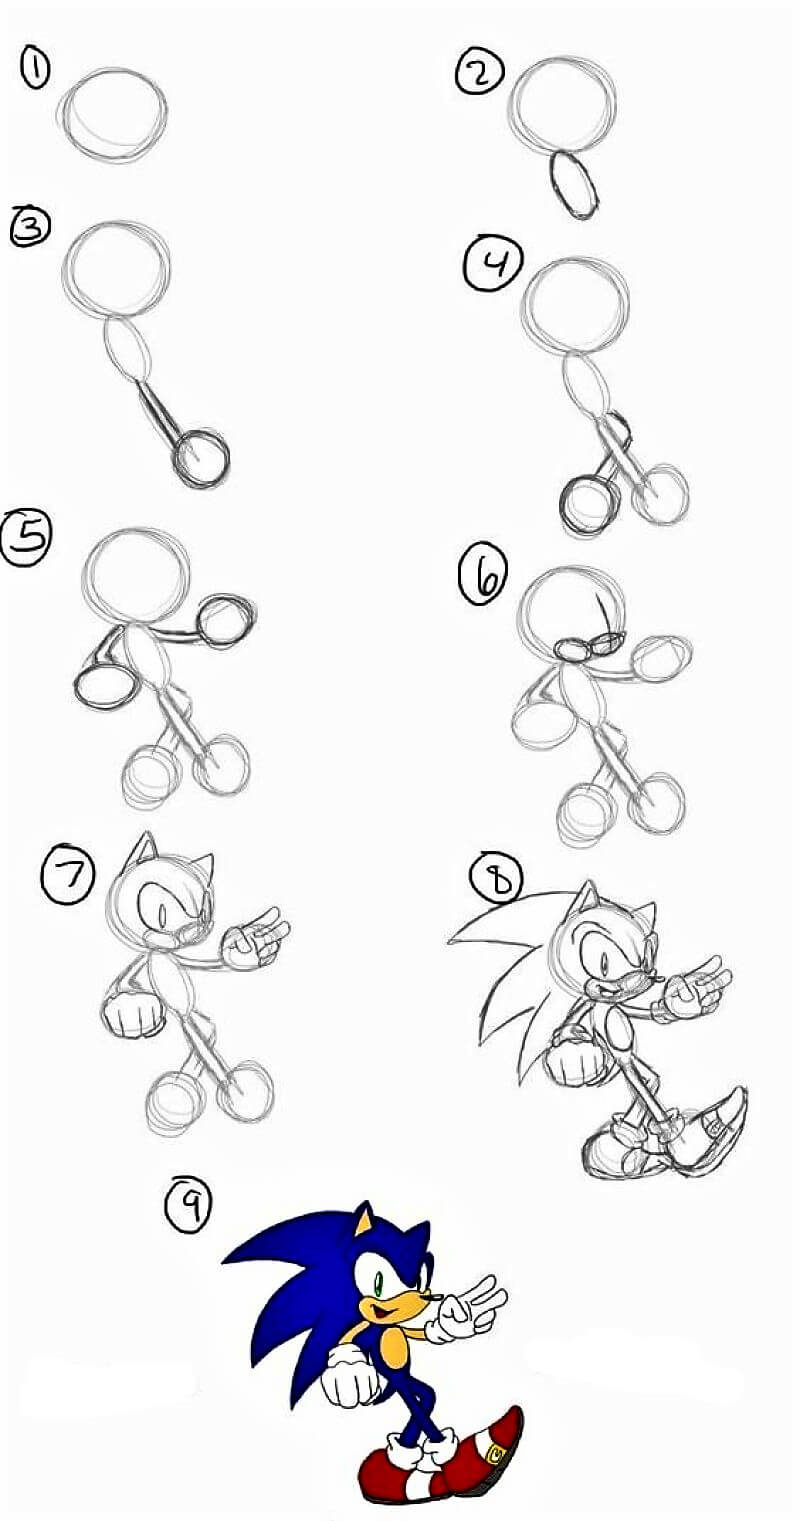 Sonic - Idee 8 zeichnen ideen